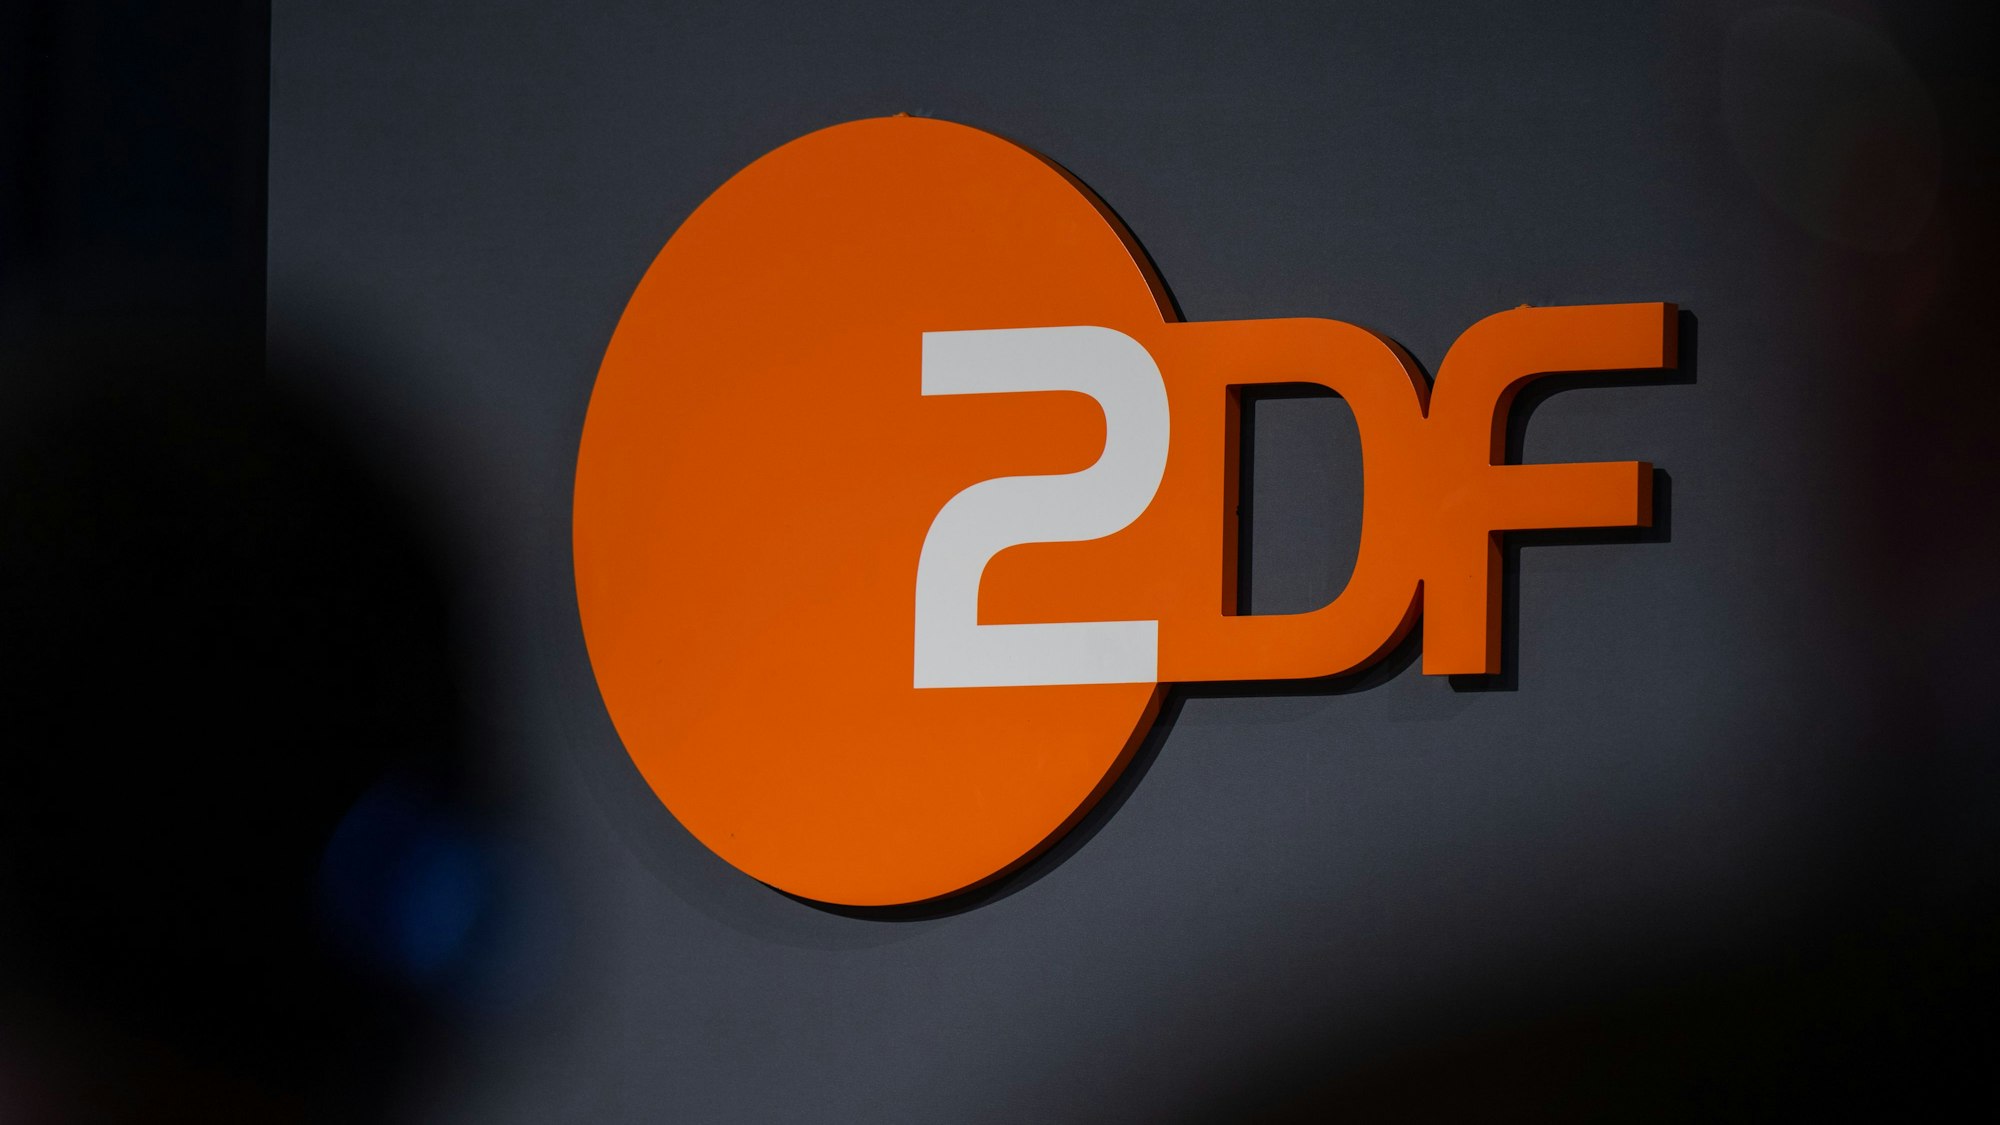 Das Logo der öffentlich-rechtlichen Rundfunkanstalt Zweites Deutsches Fernsehen (ZDF), aufgenommen bei der Digital-Konferenz «Republica».